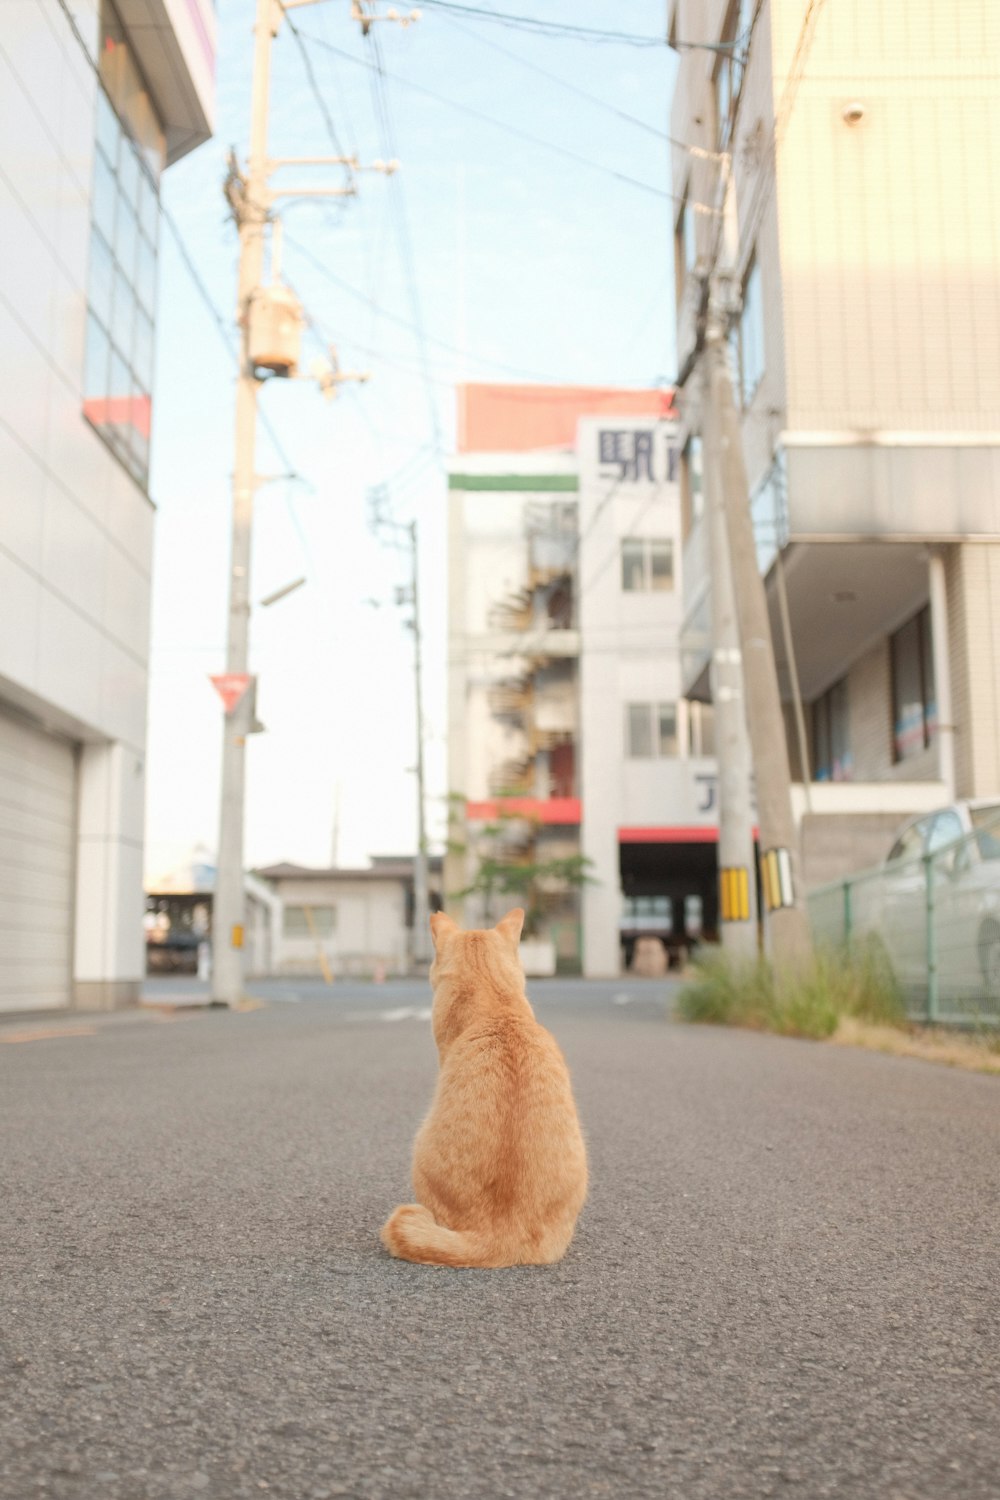 chat tigré orange sur une route asphaltée grise pendant la journée